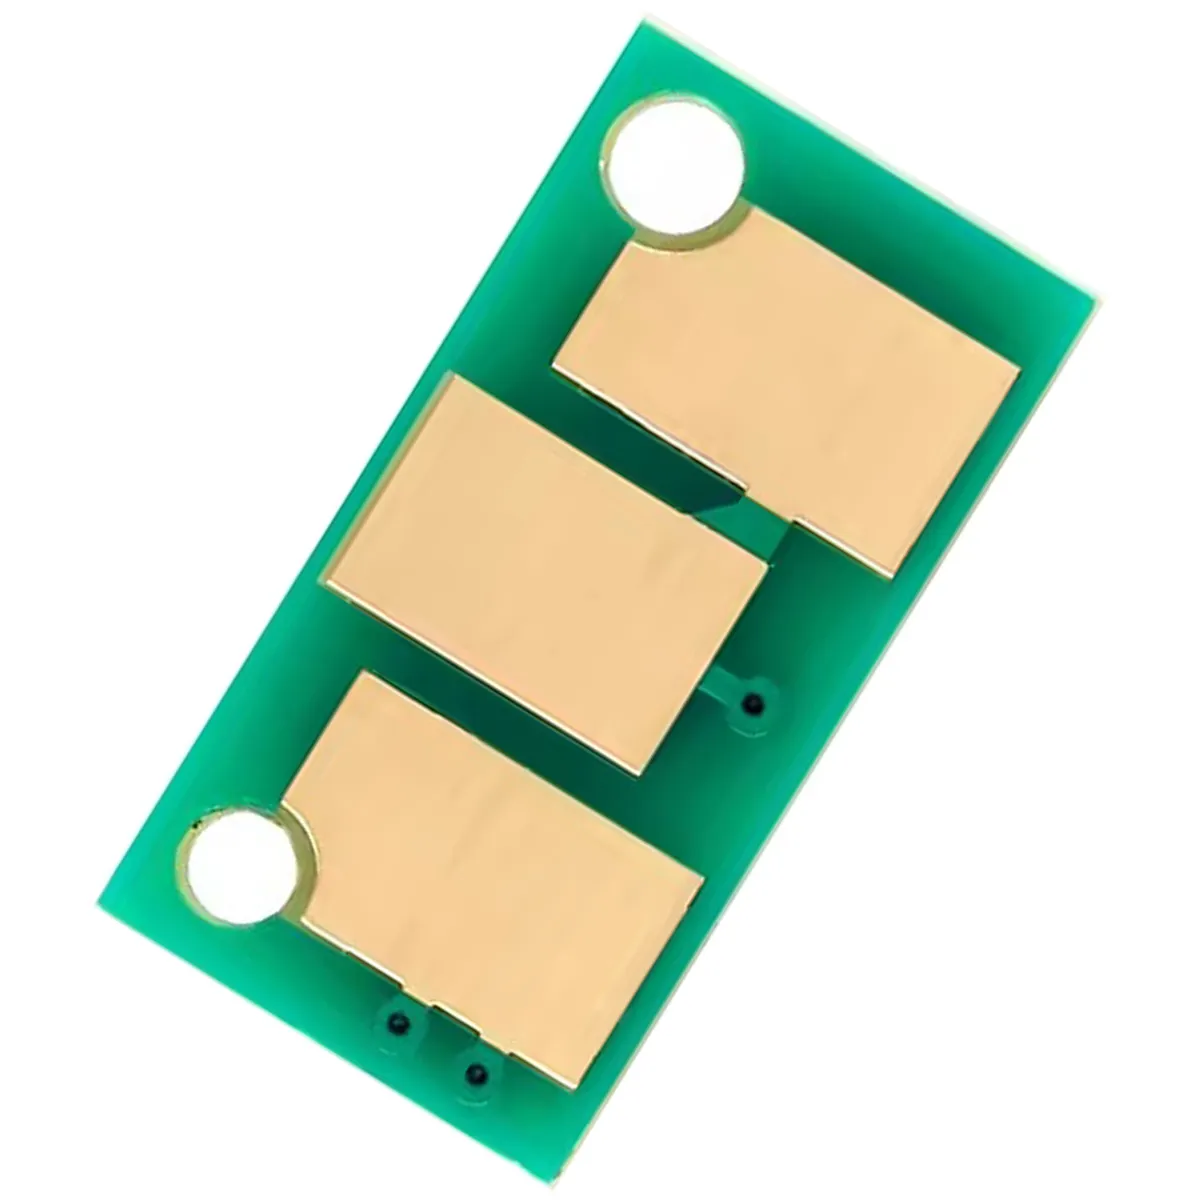 Chips Büro teile Drucker patrone Laser chip für Konica Minolta 113 Chips für Minolta Universal Silicone Seals